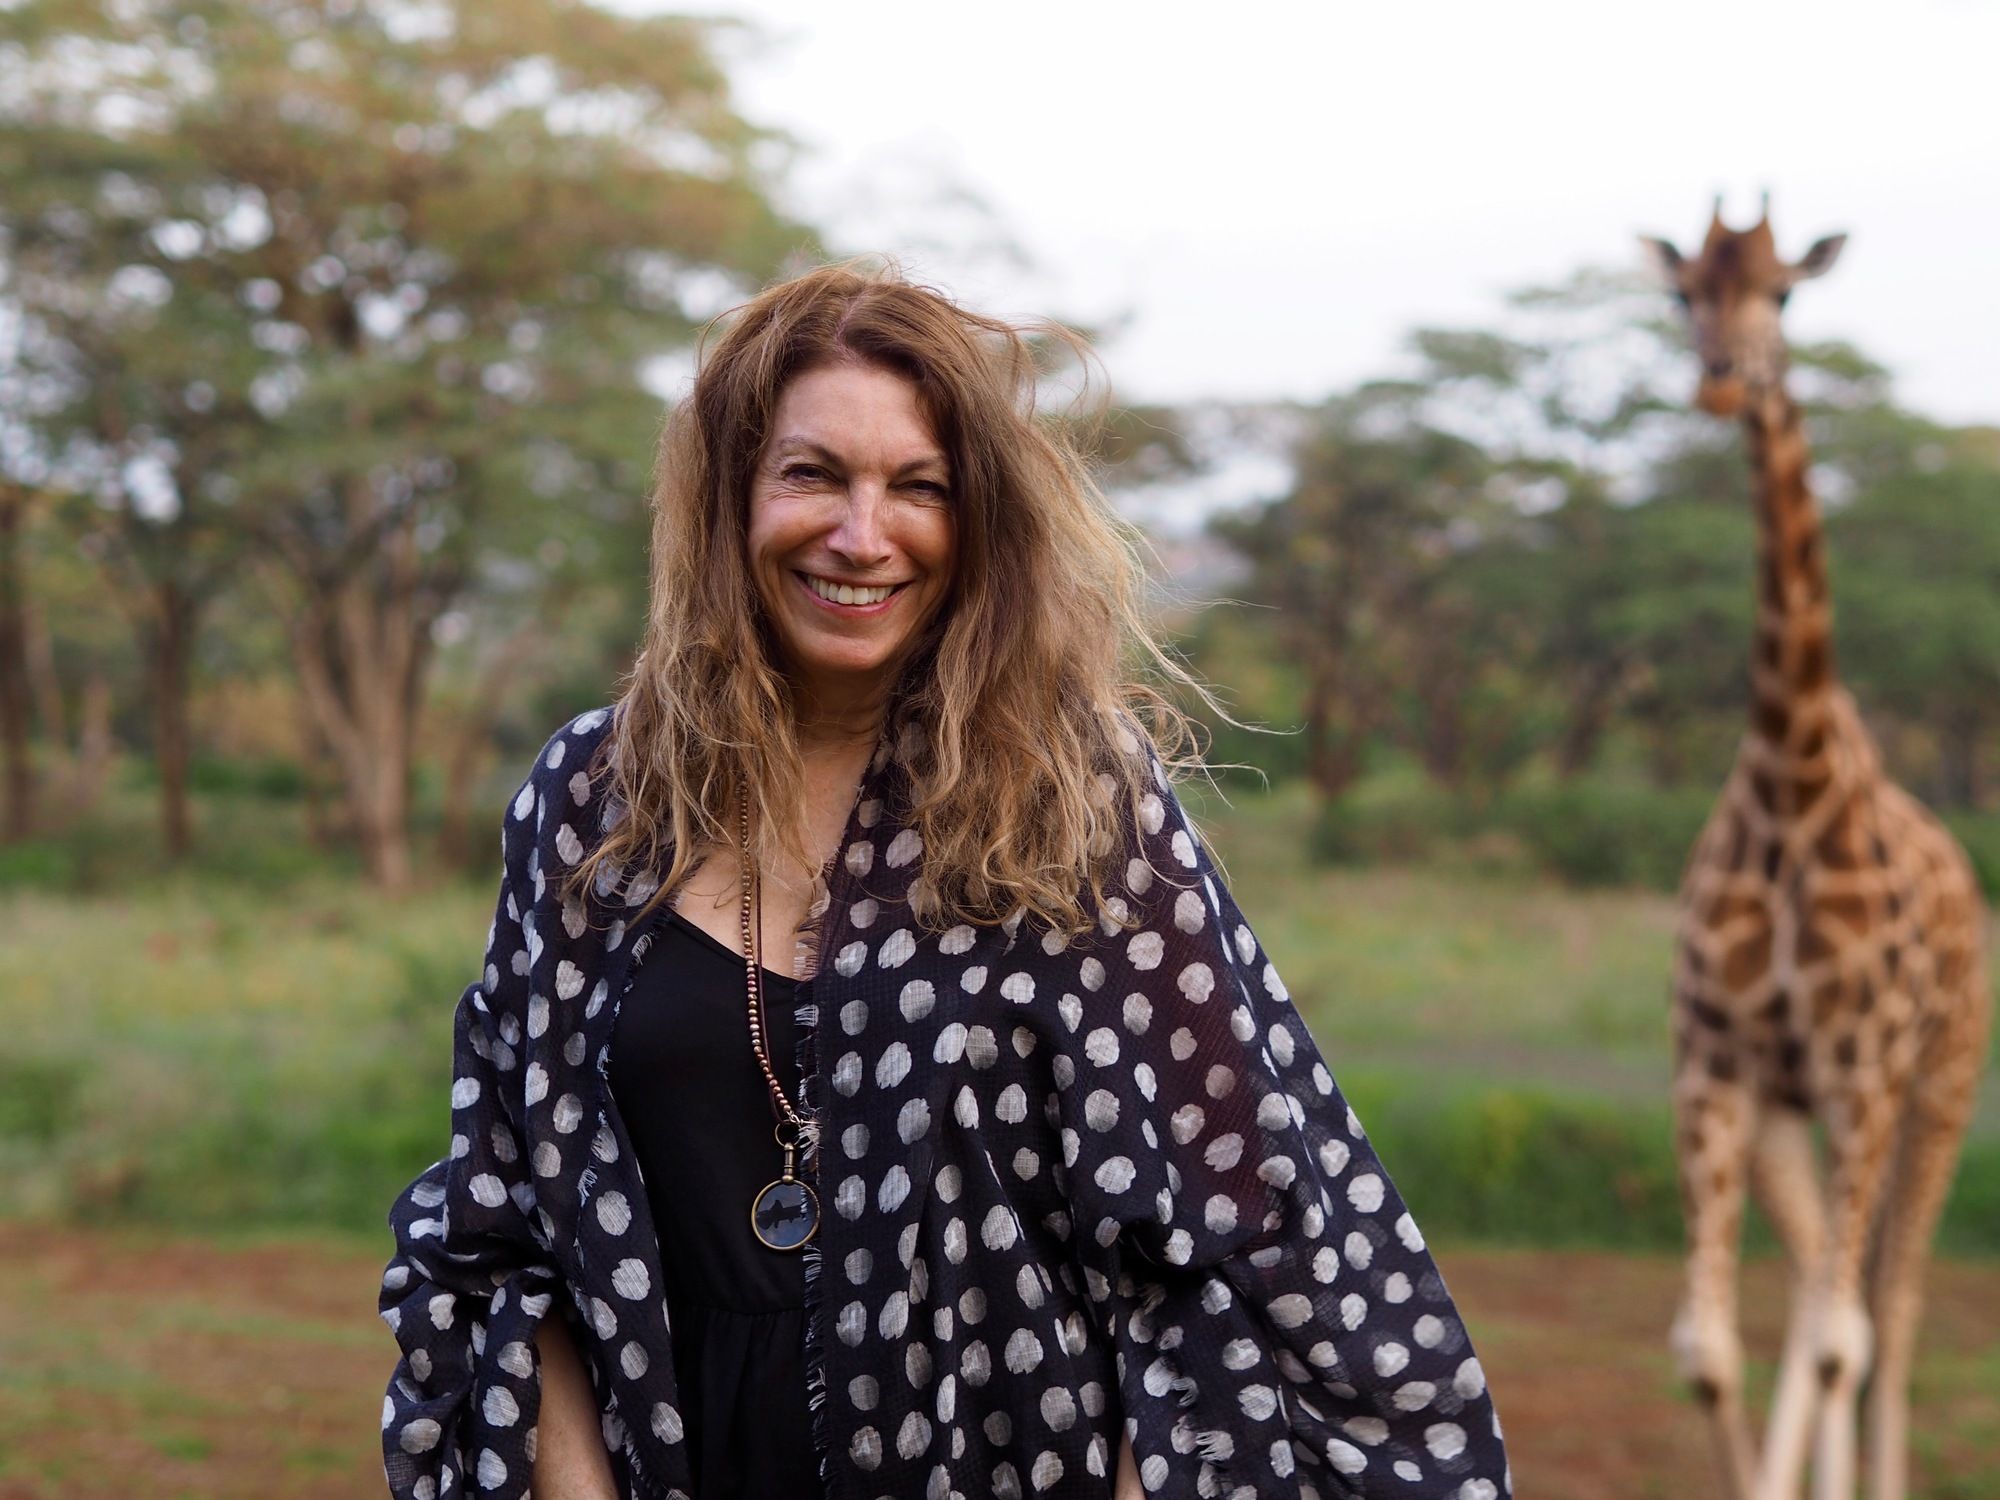 Giraffe Manor Nairobi Kenya